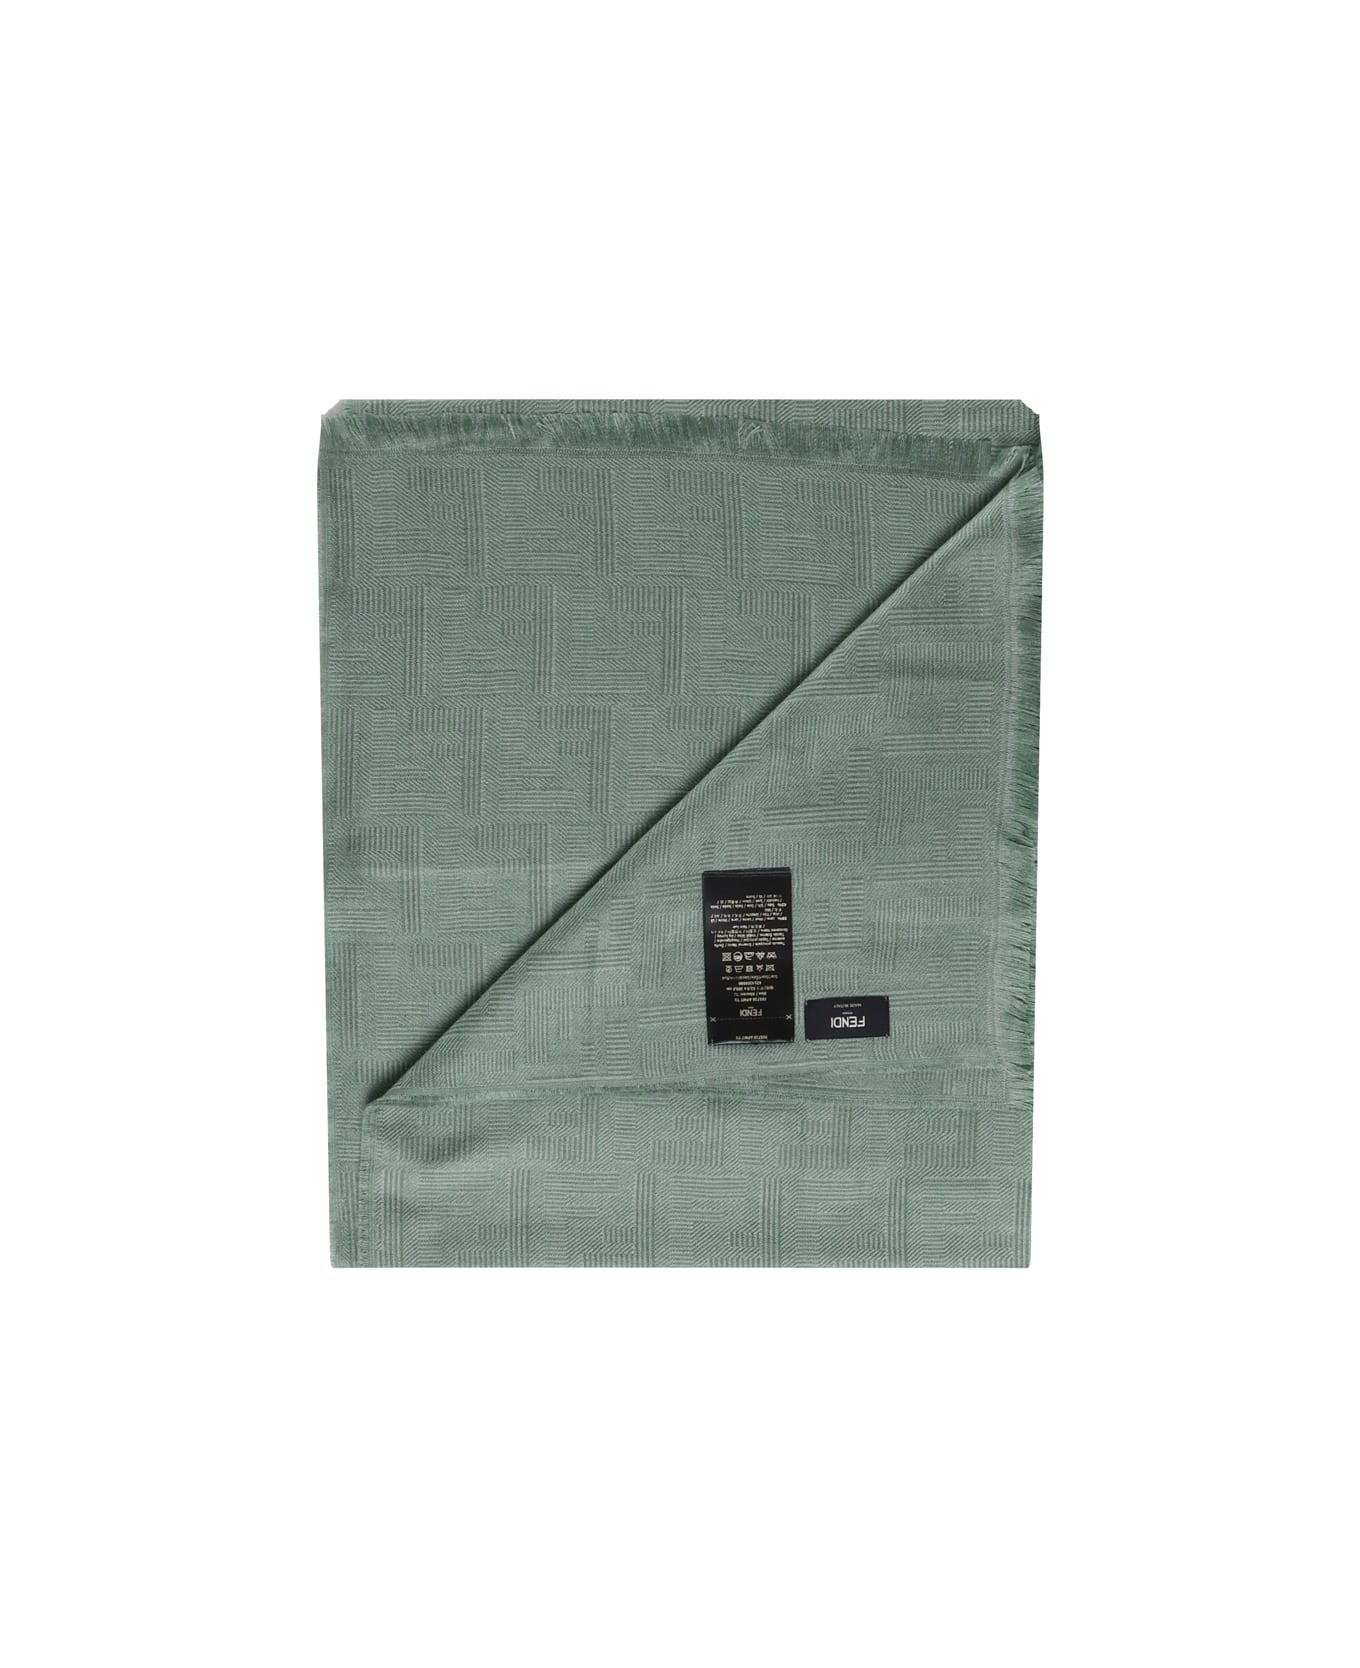 Fendi Wool And Silk Scarf - Green スカーフ